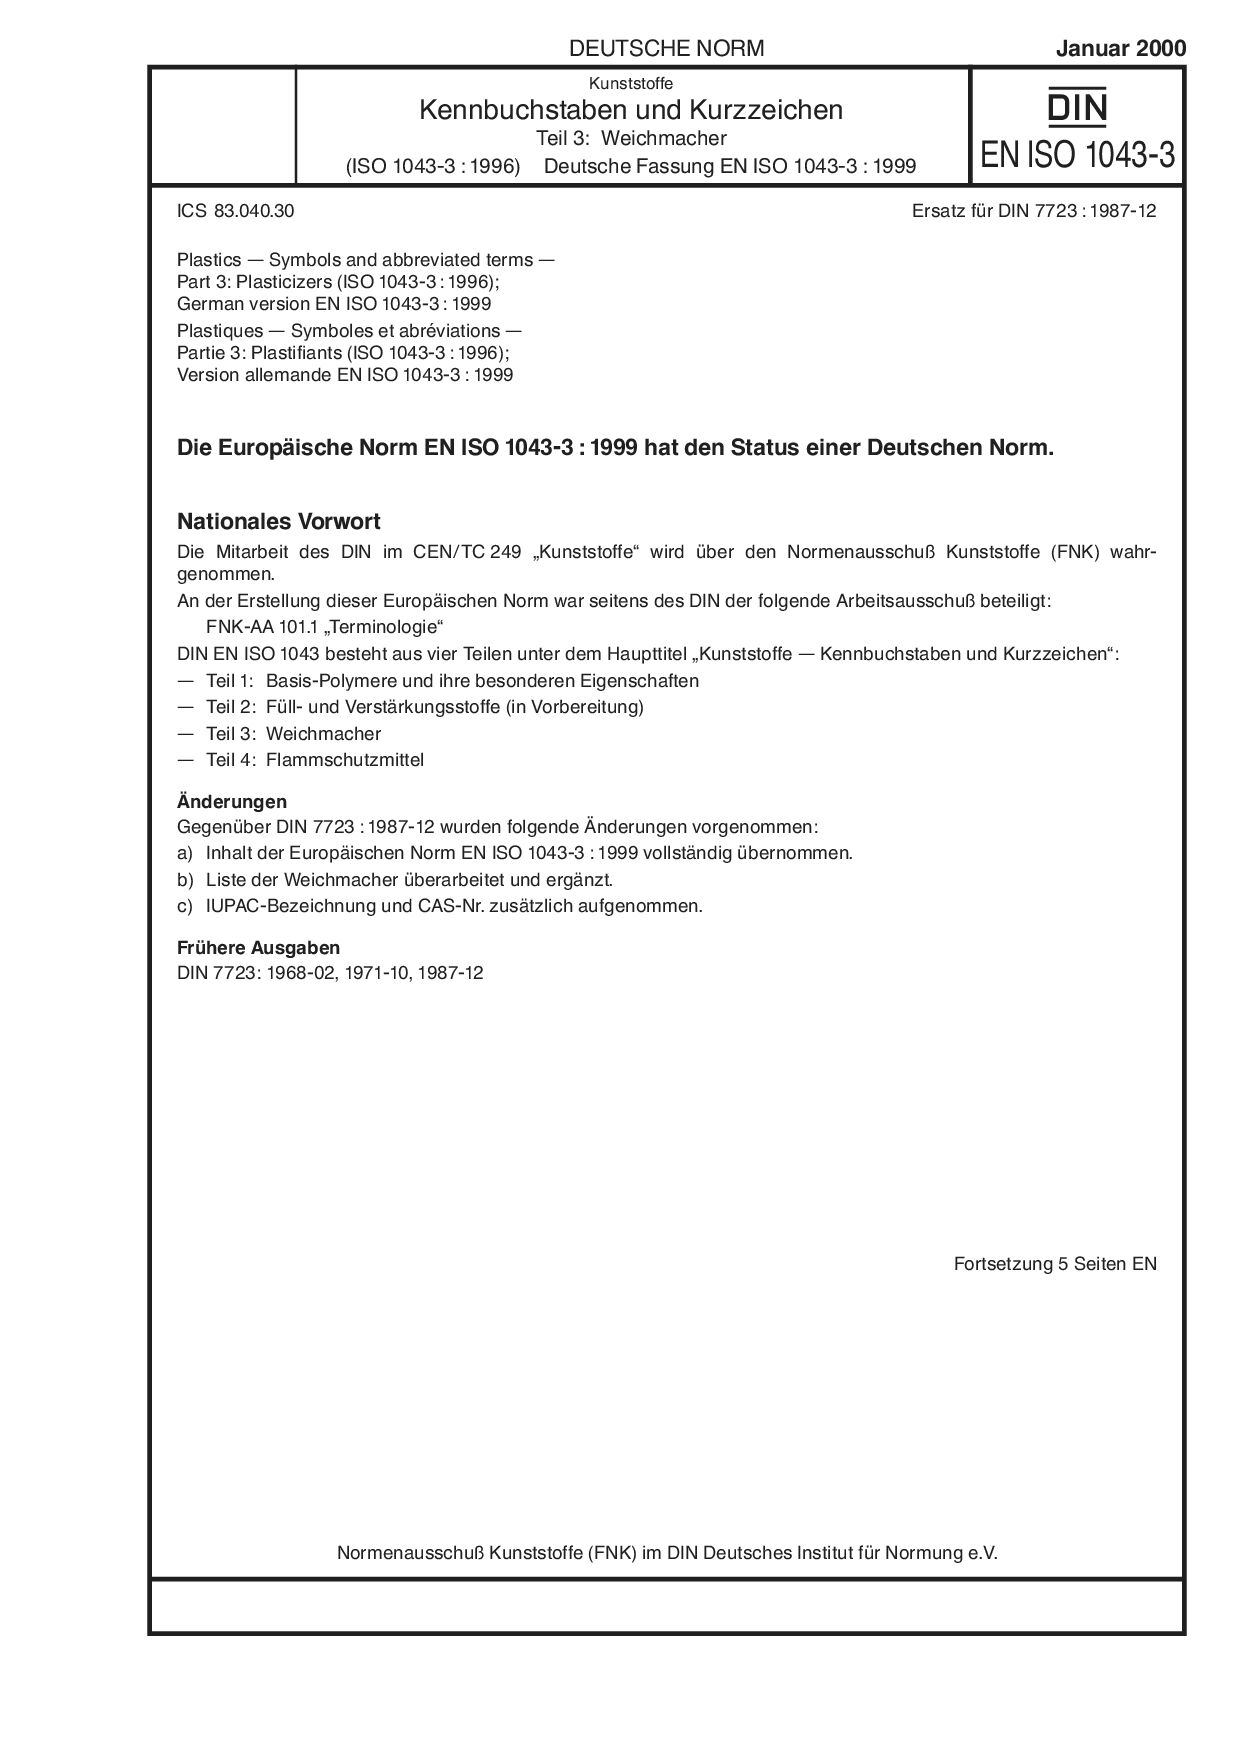 DIN EN ISO 1043-3:2000封面图